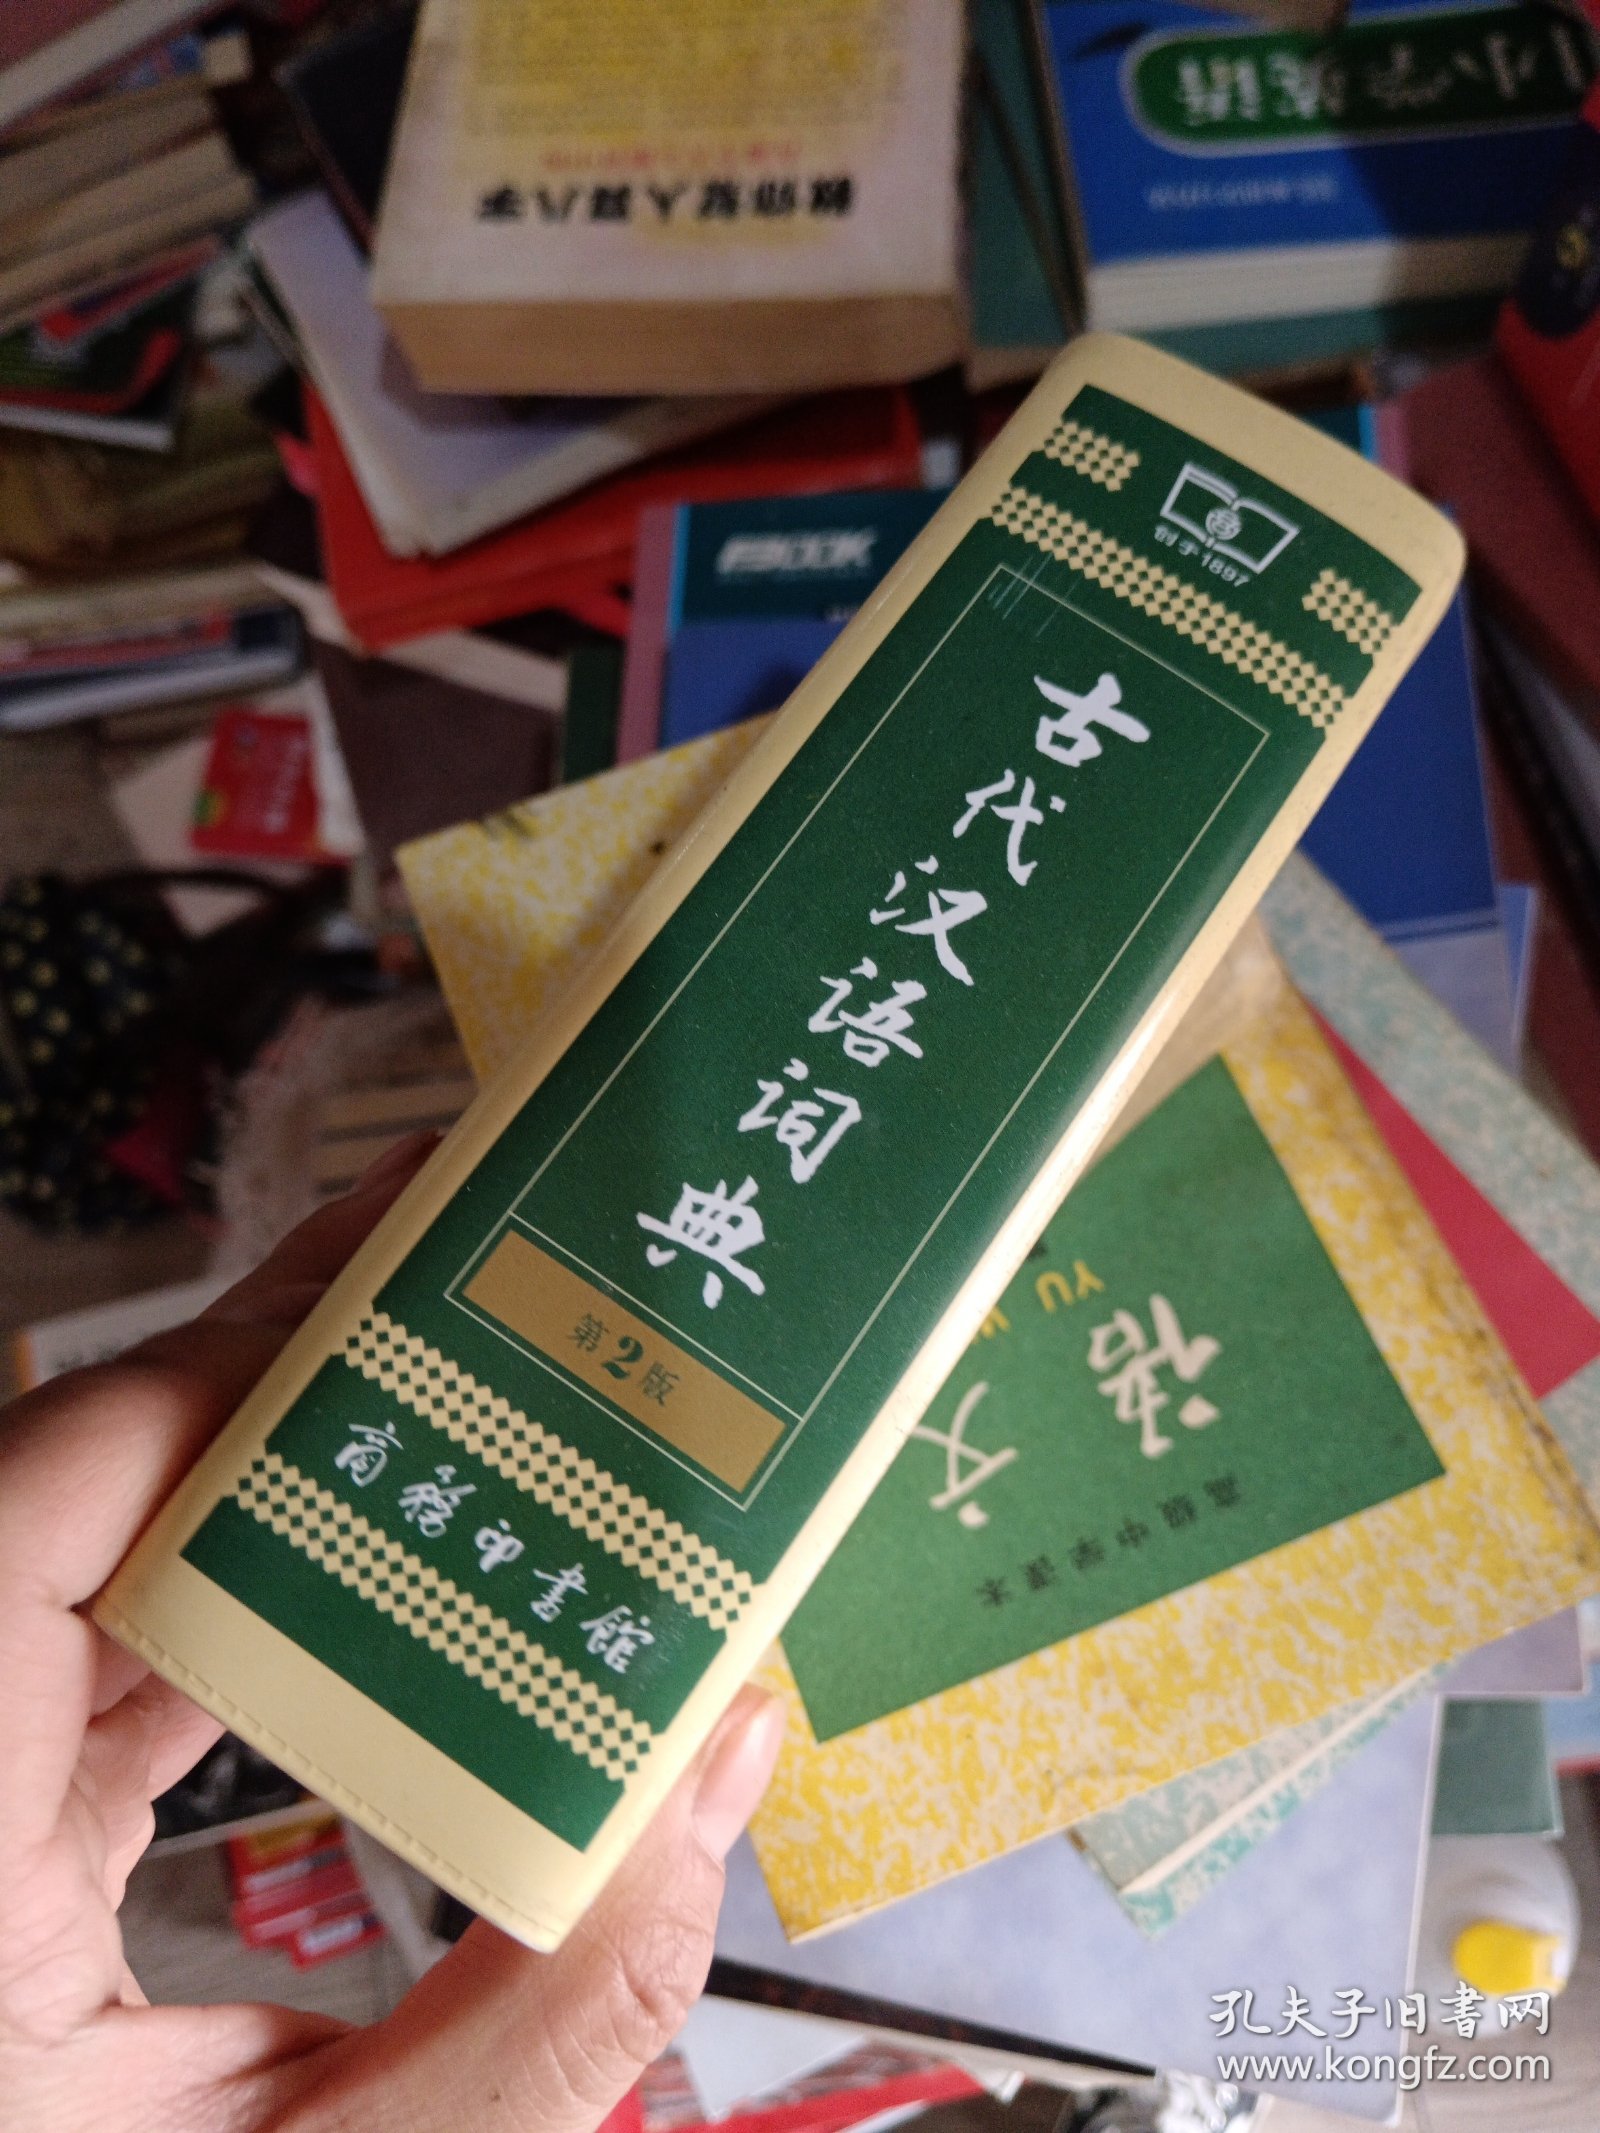 古代汉语词典（第2版·缩印本）第二版